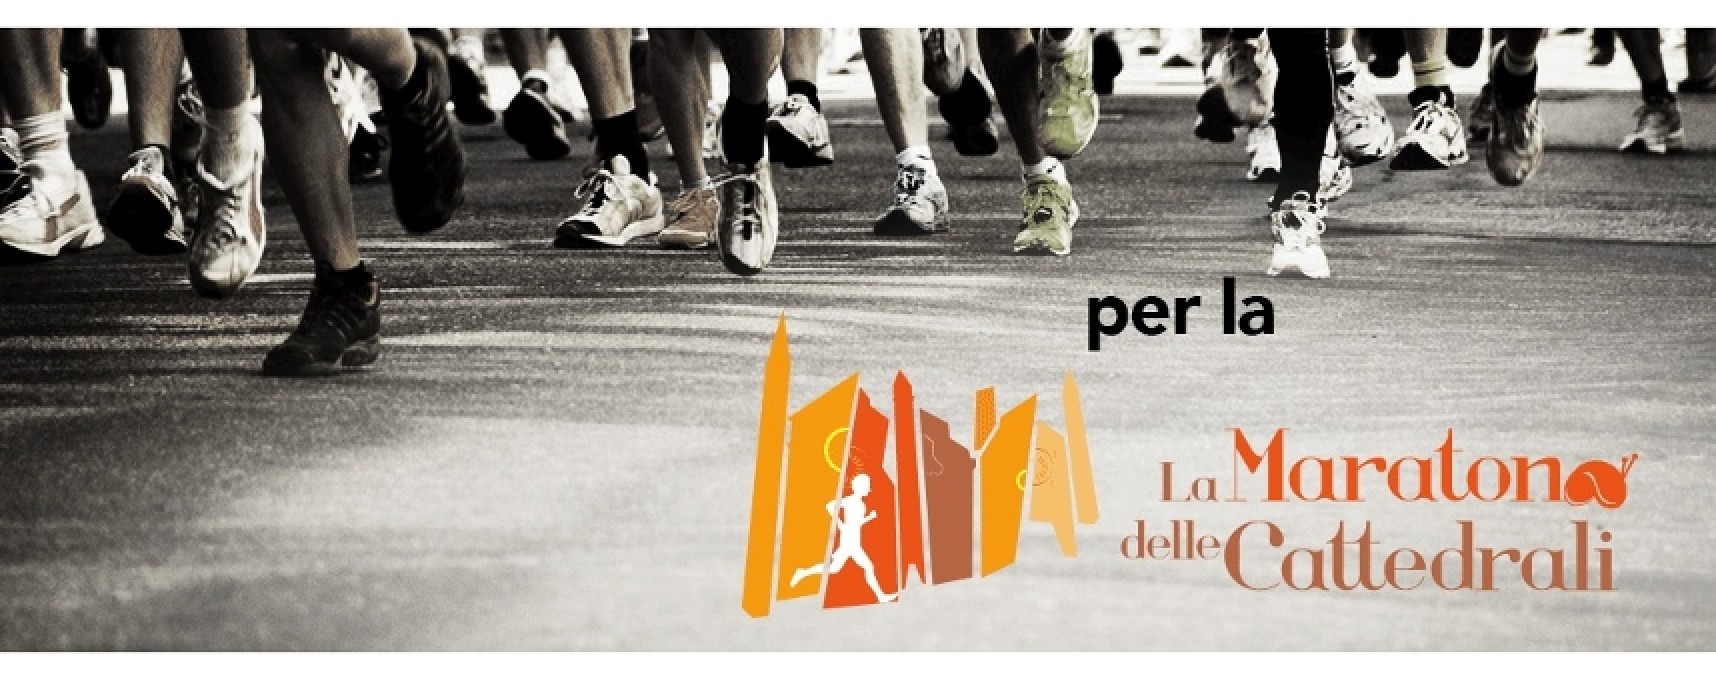 Oltre mille iscritti a “La Maratona delle Cattedrali”, partirà da Bisceglie la mezza maratona